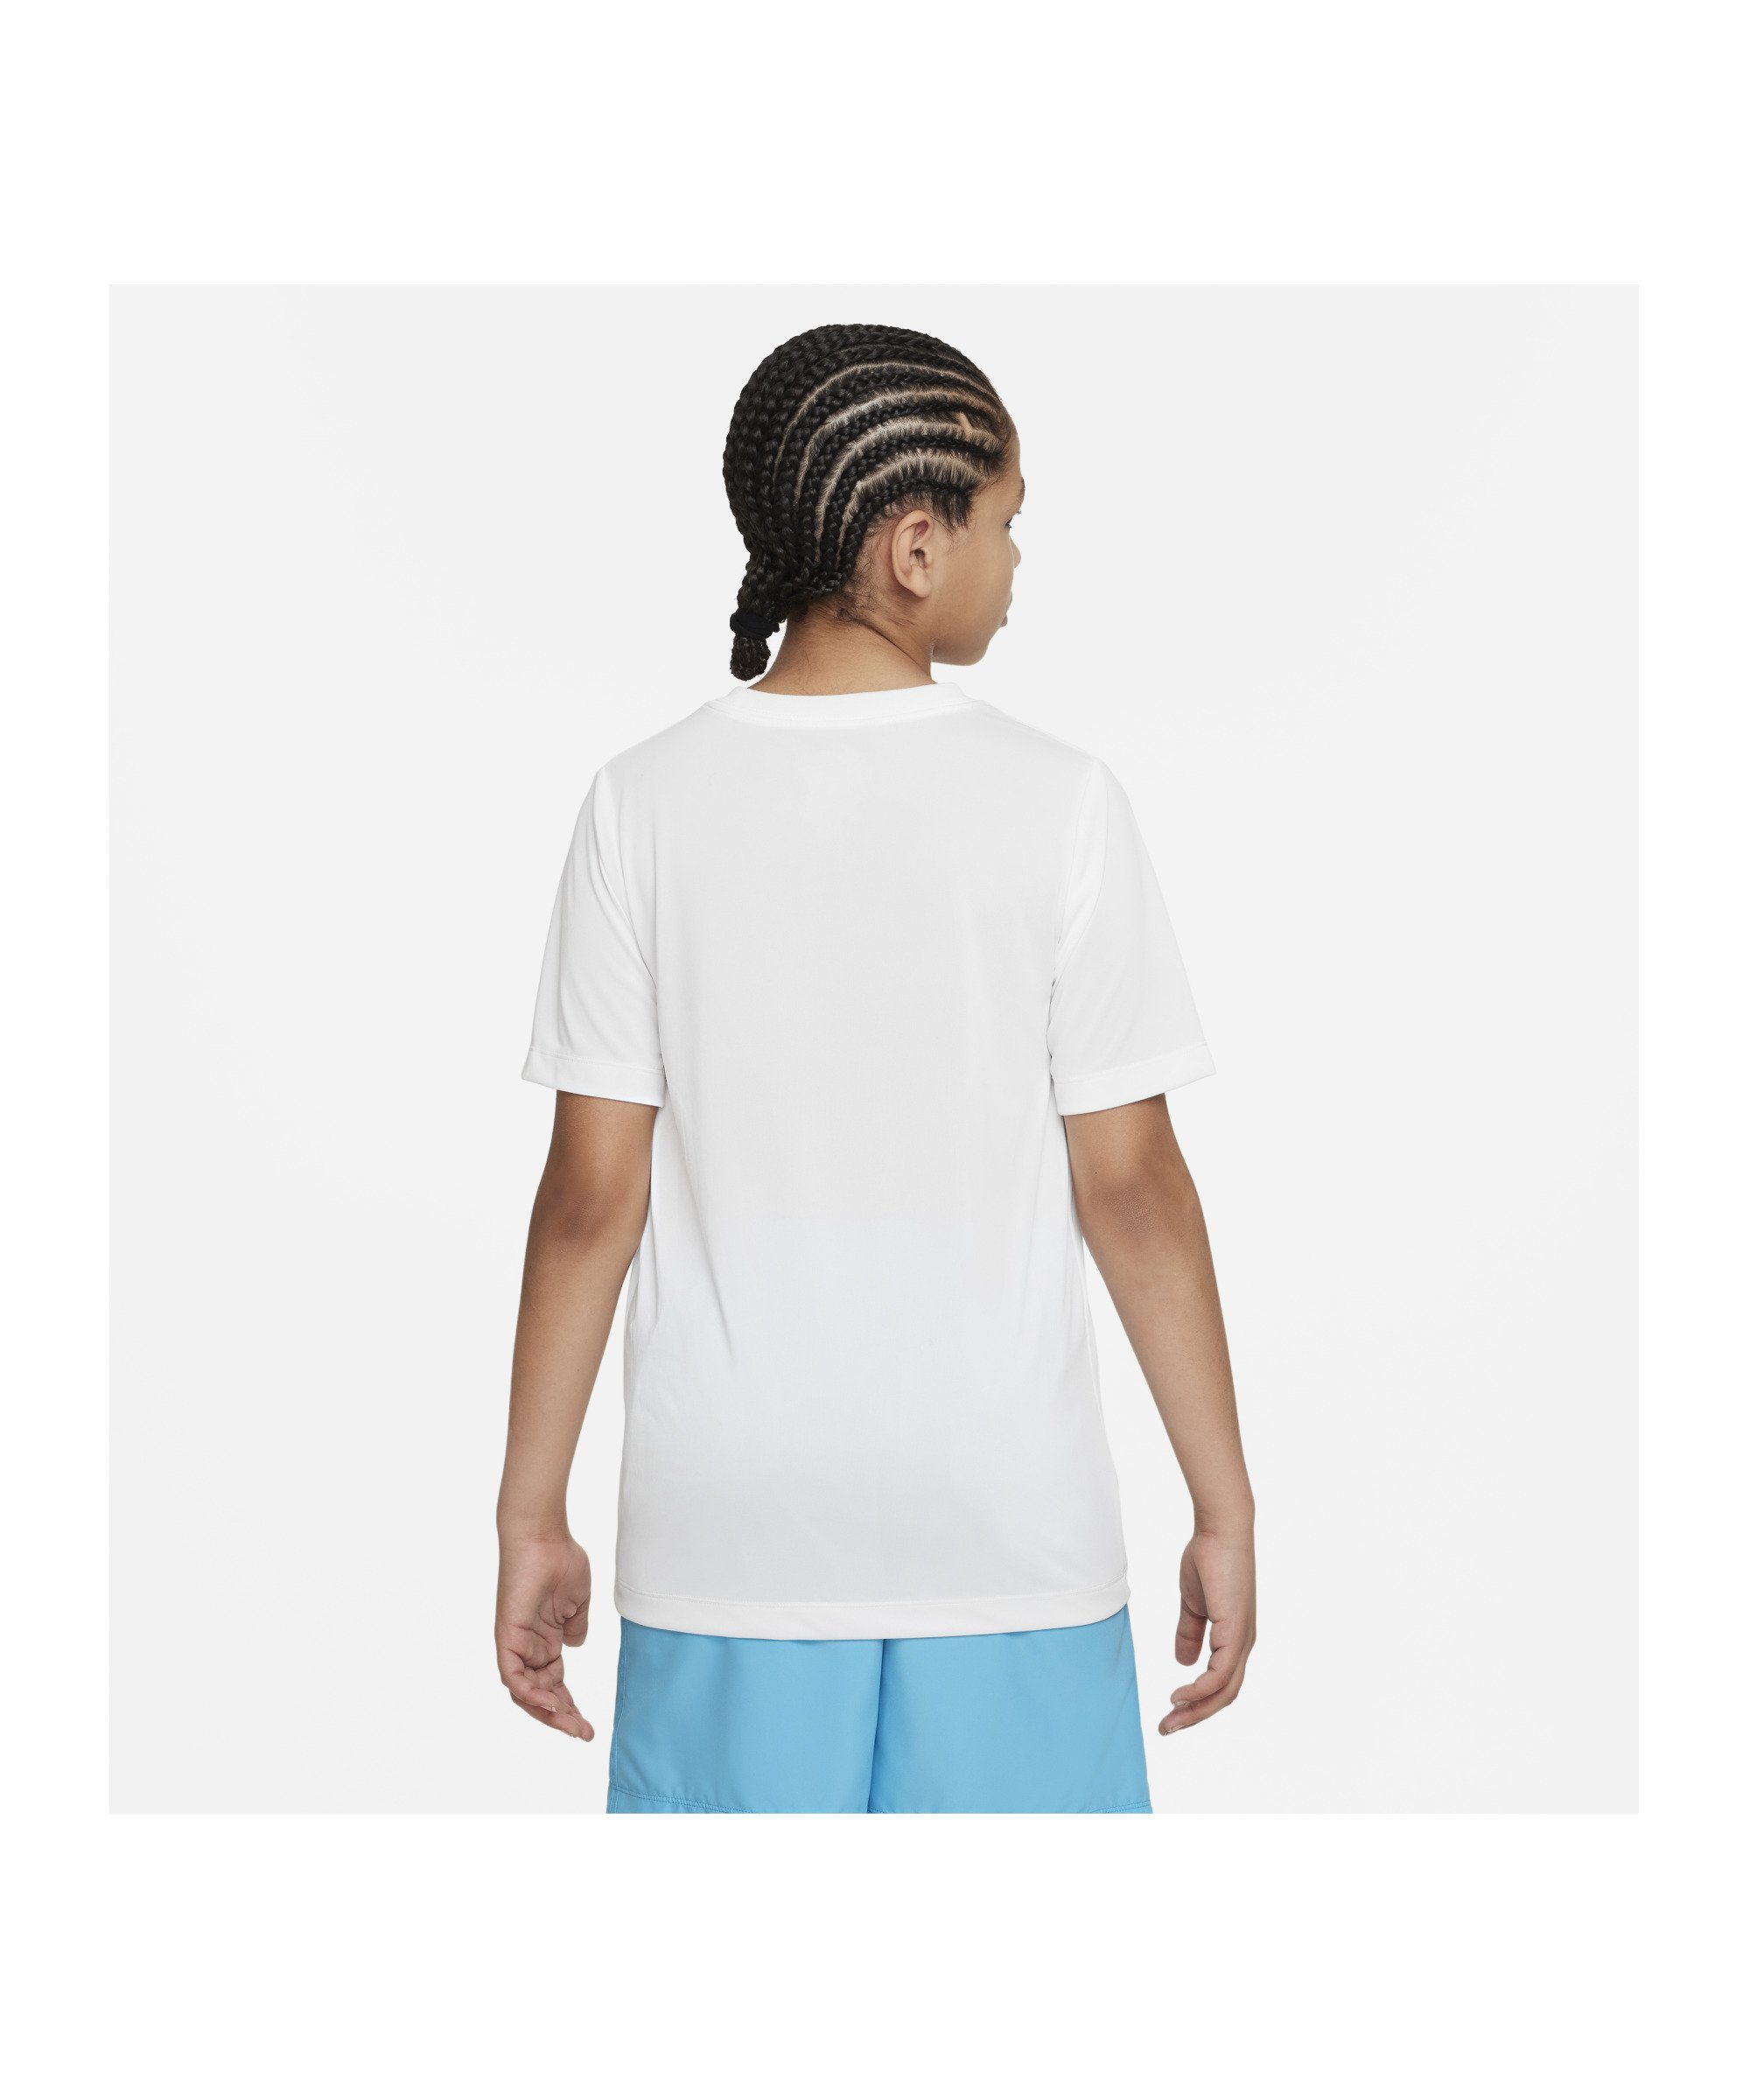 Kids Laufshirt T-Shirt weiss default Nike Training